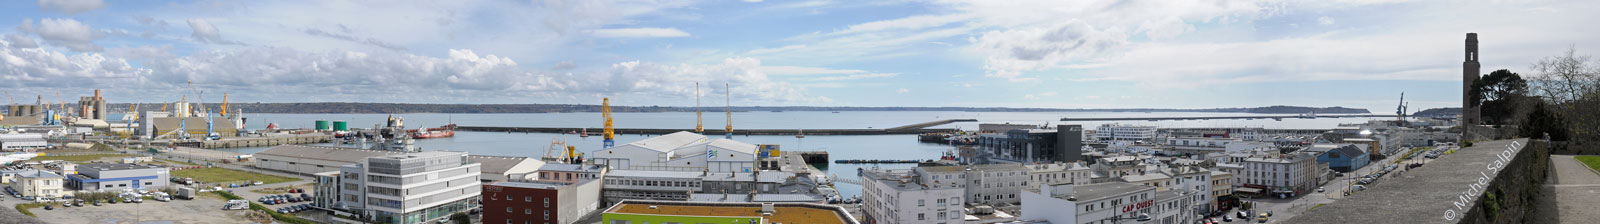 Le port de Commerce de Brest - panorama